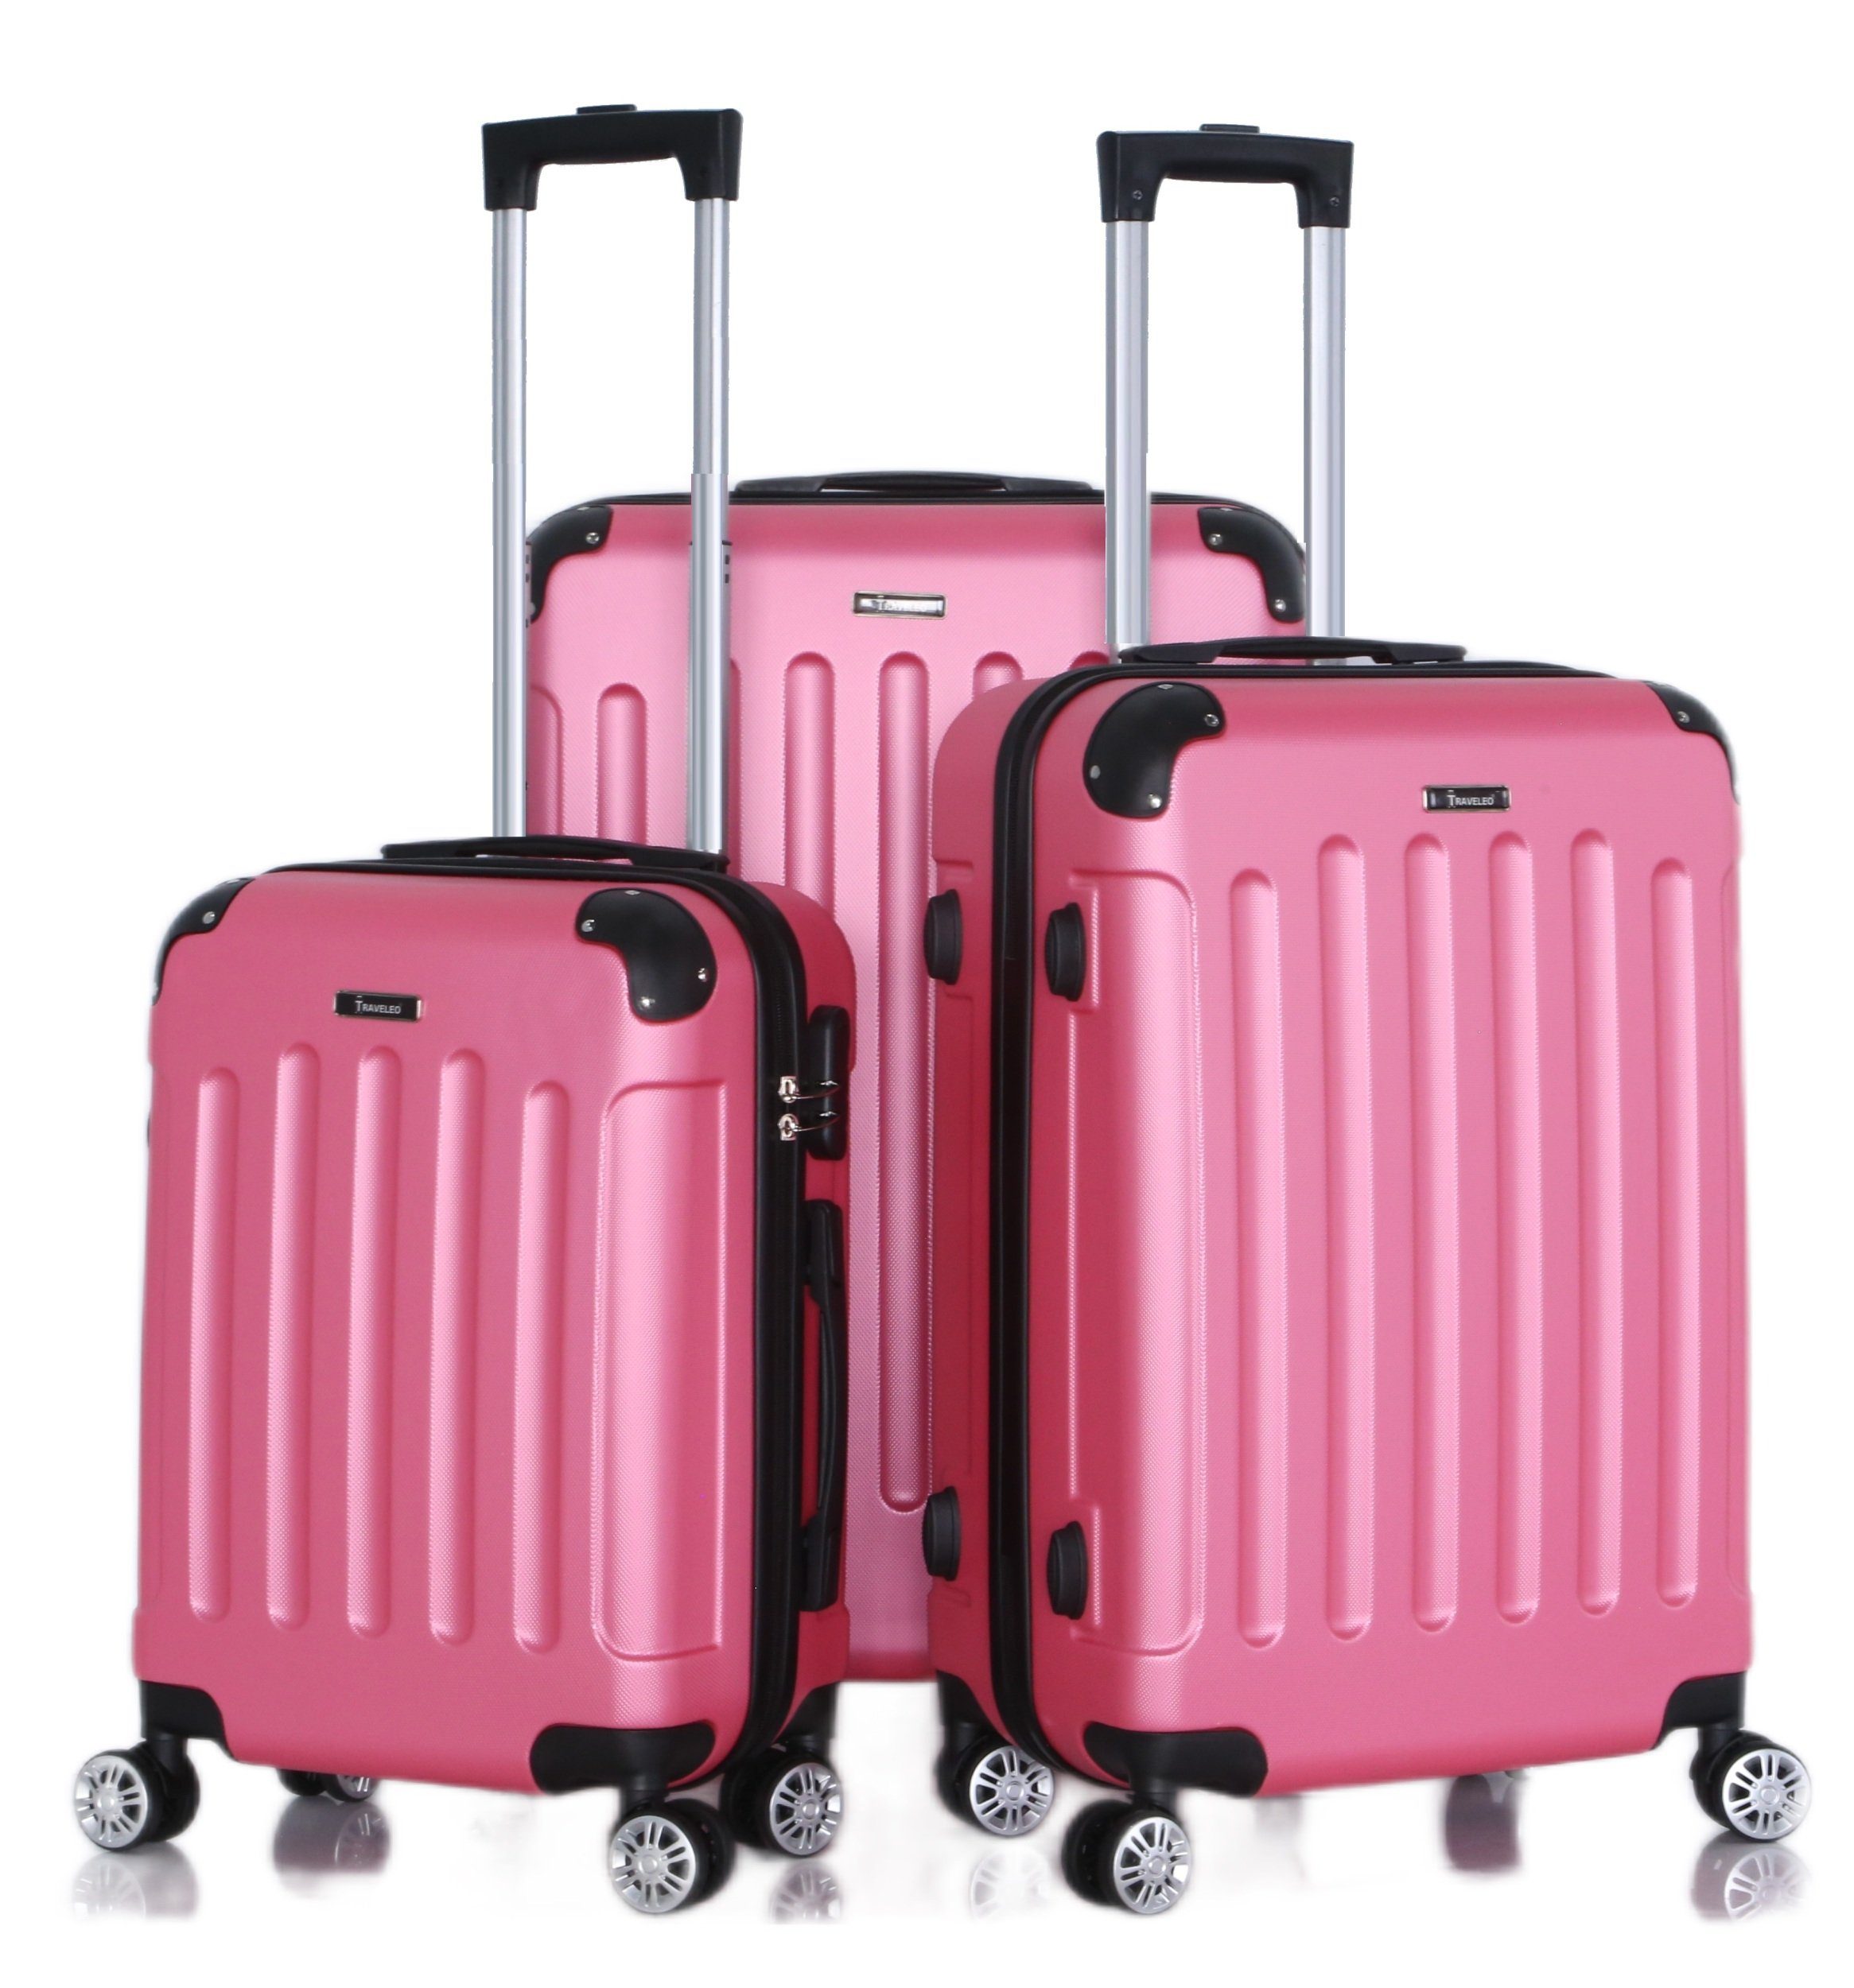 Rungassi Kofferset Hartschalenkoffer Trolley Set pink Rungassi Reisekoffer ABS01 Koffer